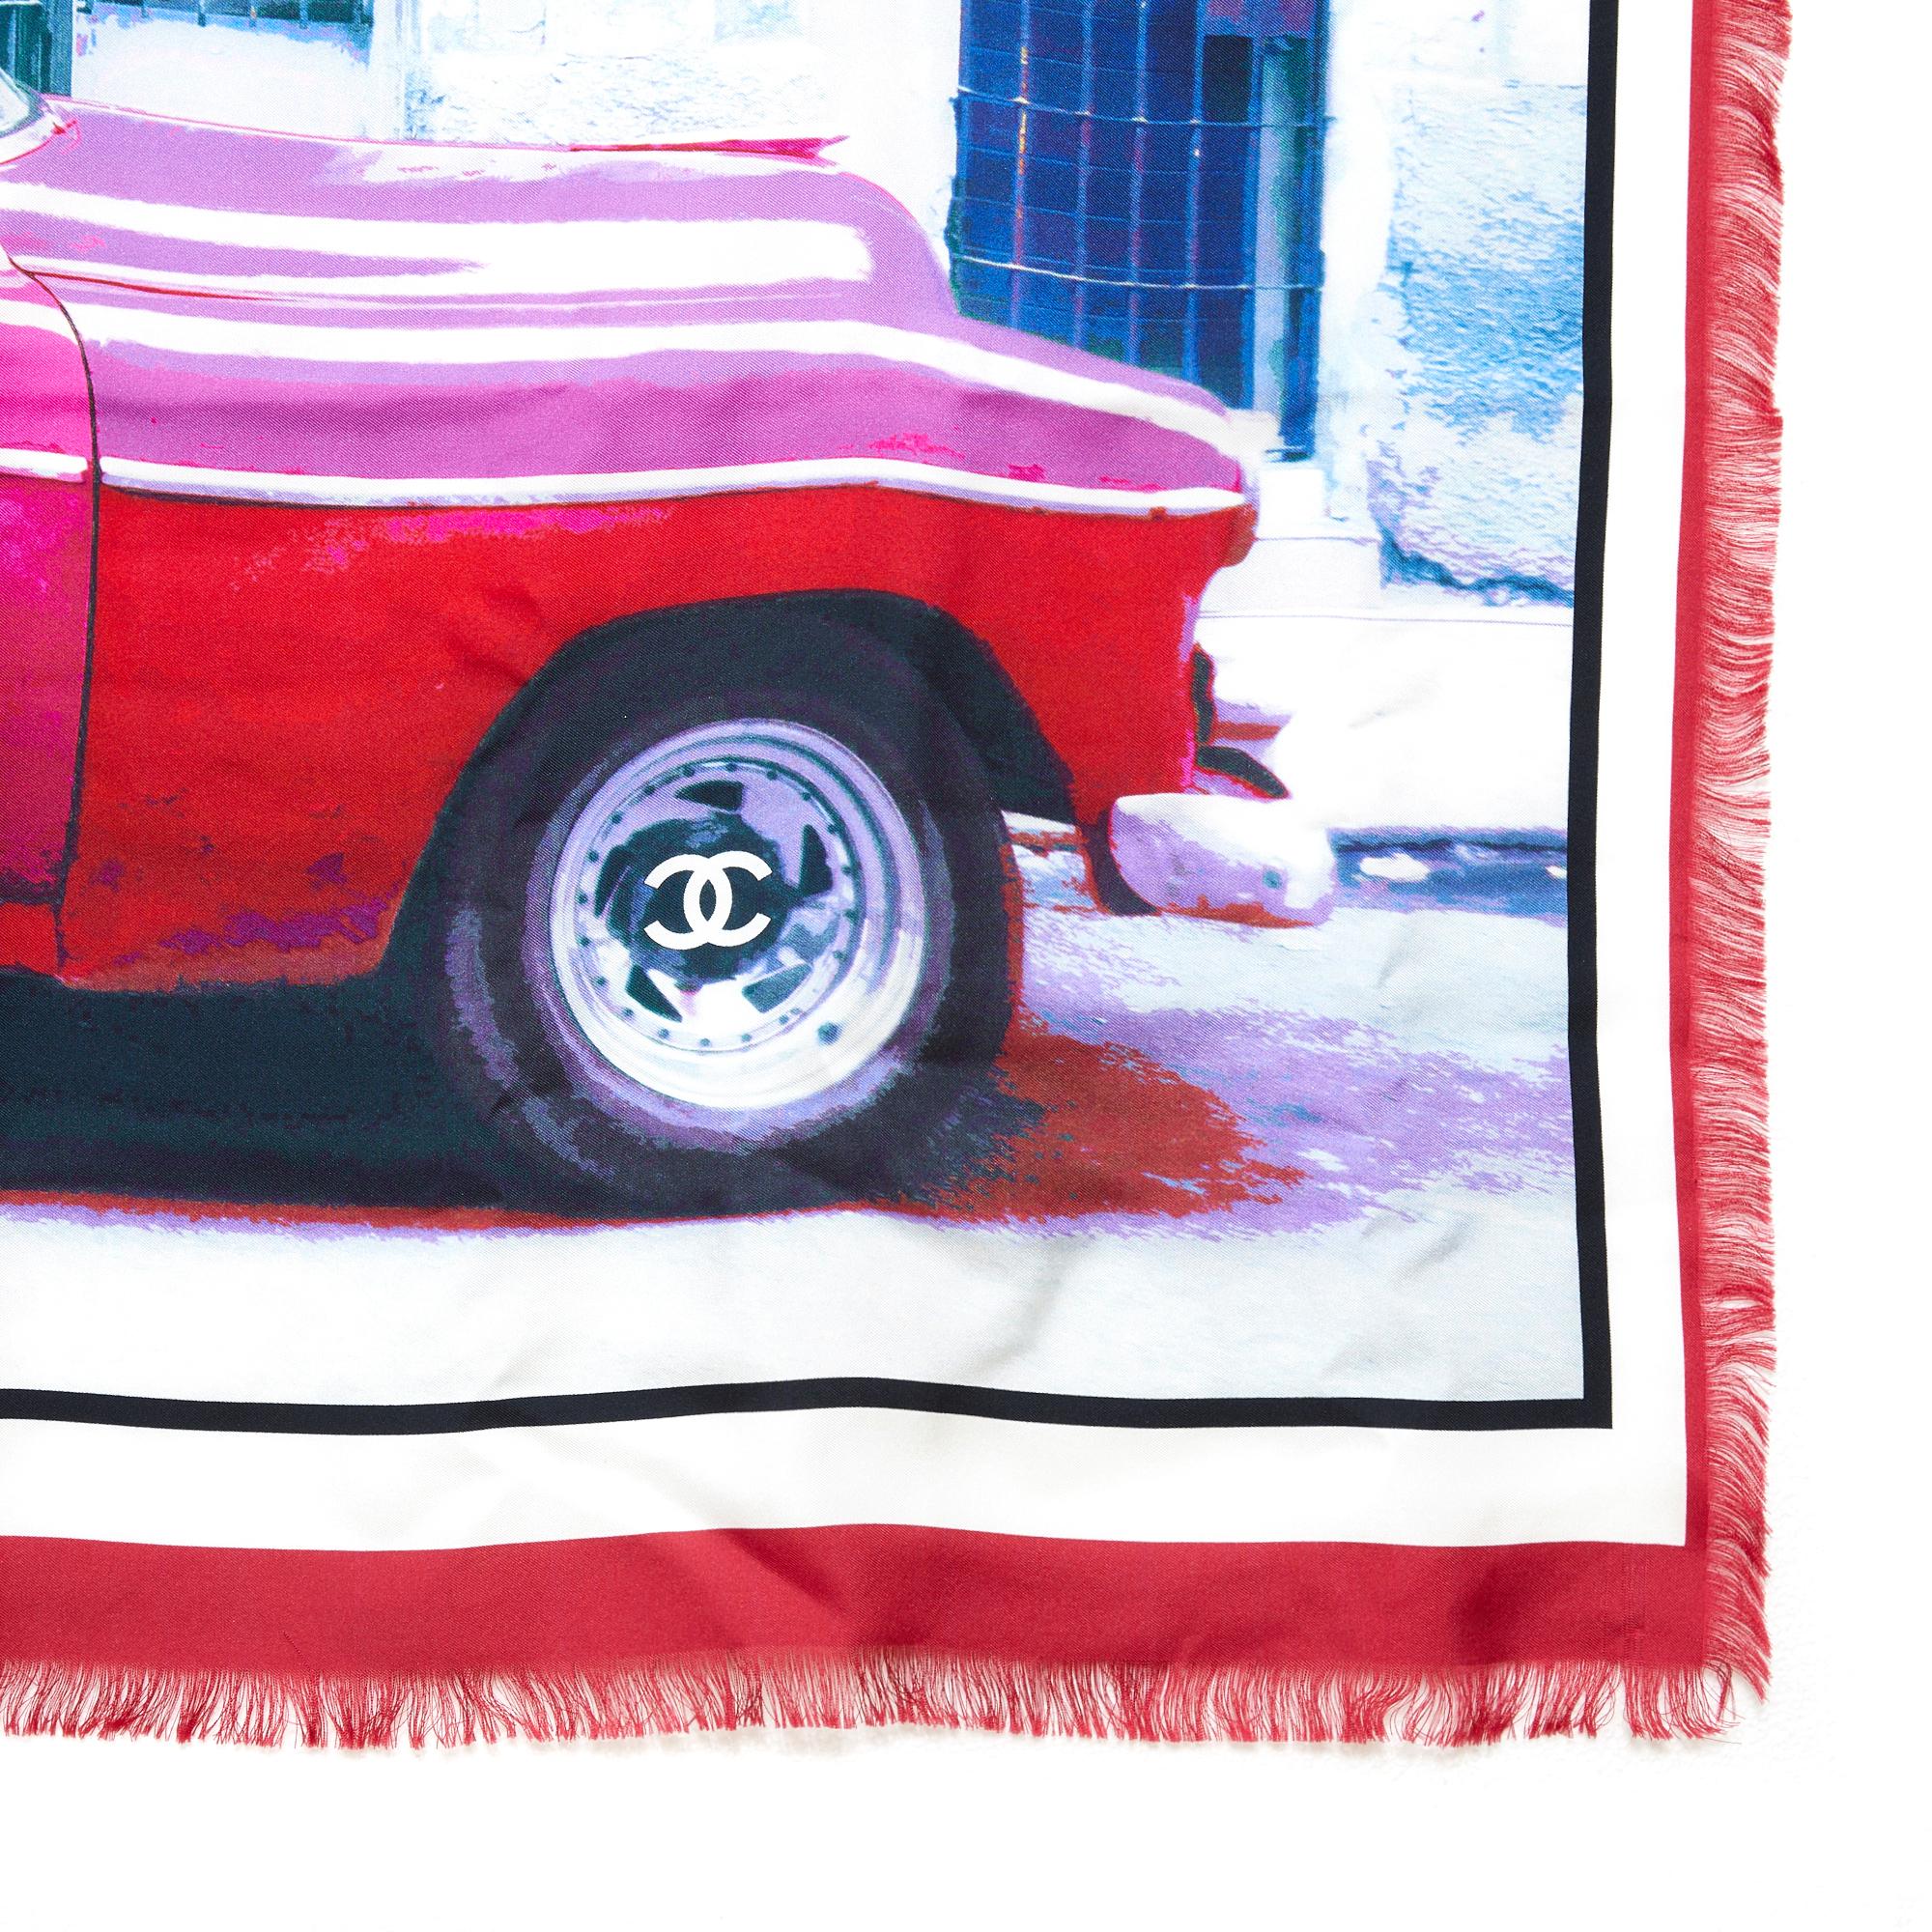 Étole ou paréo Chanel de la collection 2017 Cruise to Cuba en soie imprimée multicolore écrue à bords effilochés. Largeur 135 cm x hauteur 120 cm. L'étole est en très bon état, livrée dans sa boîte Chanel.